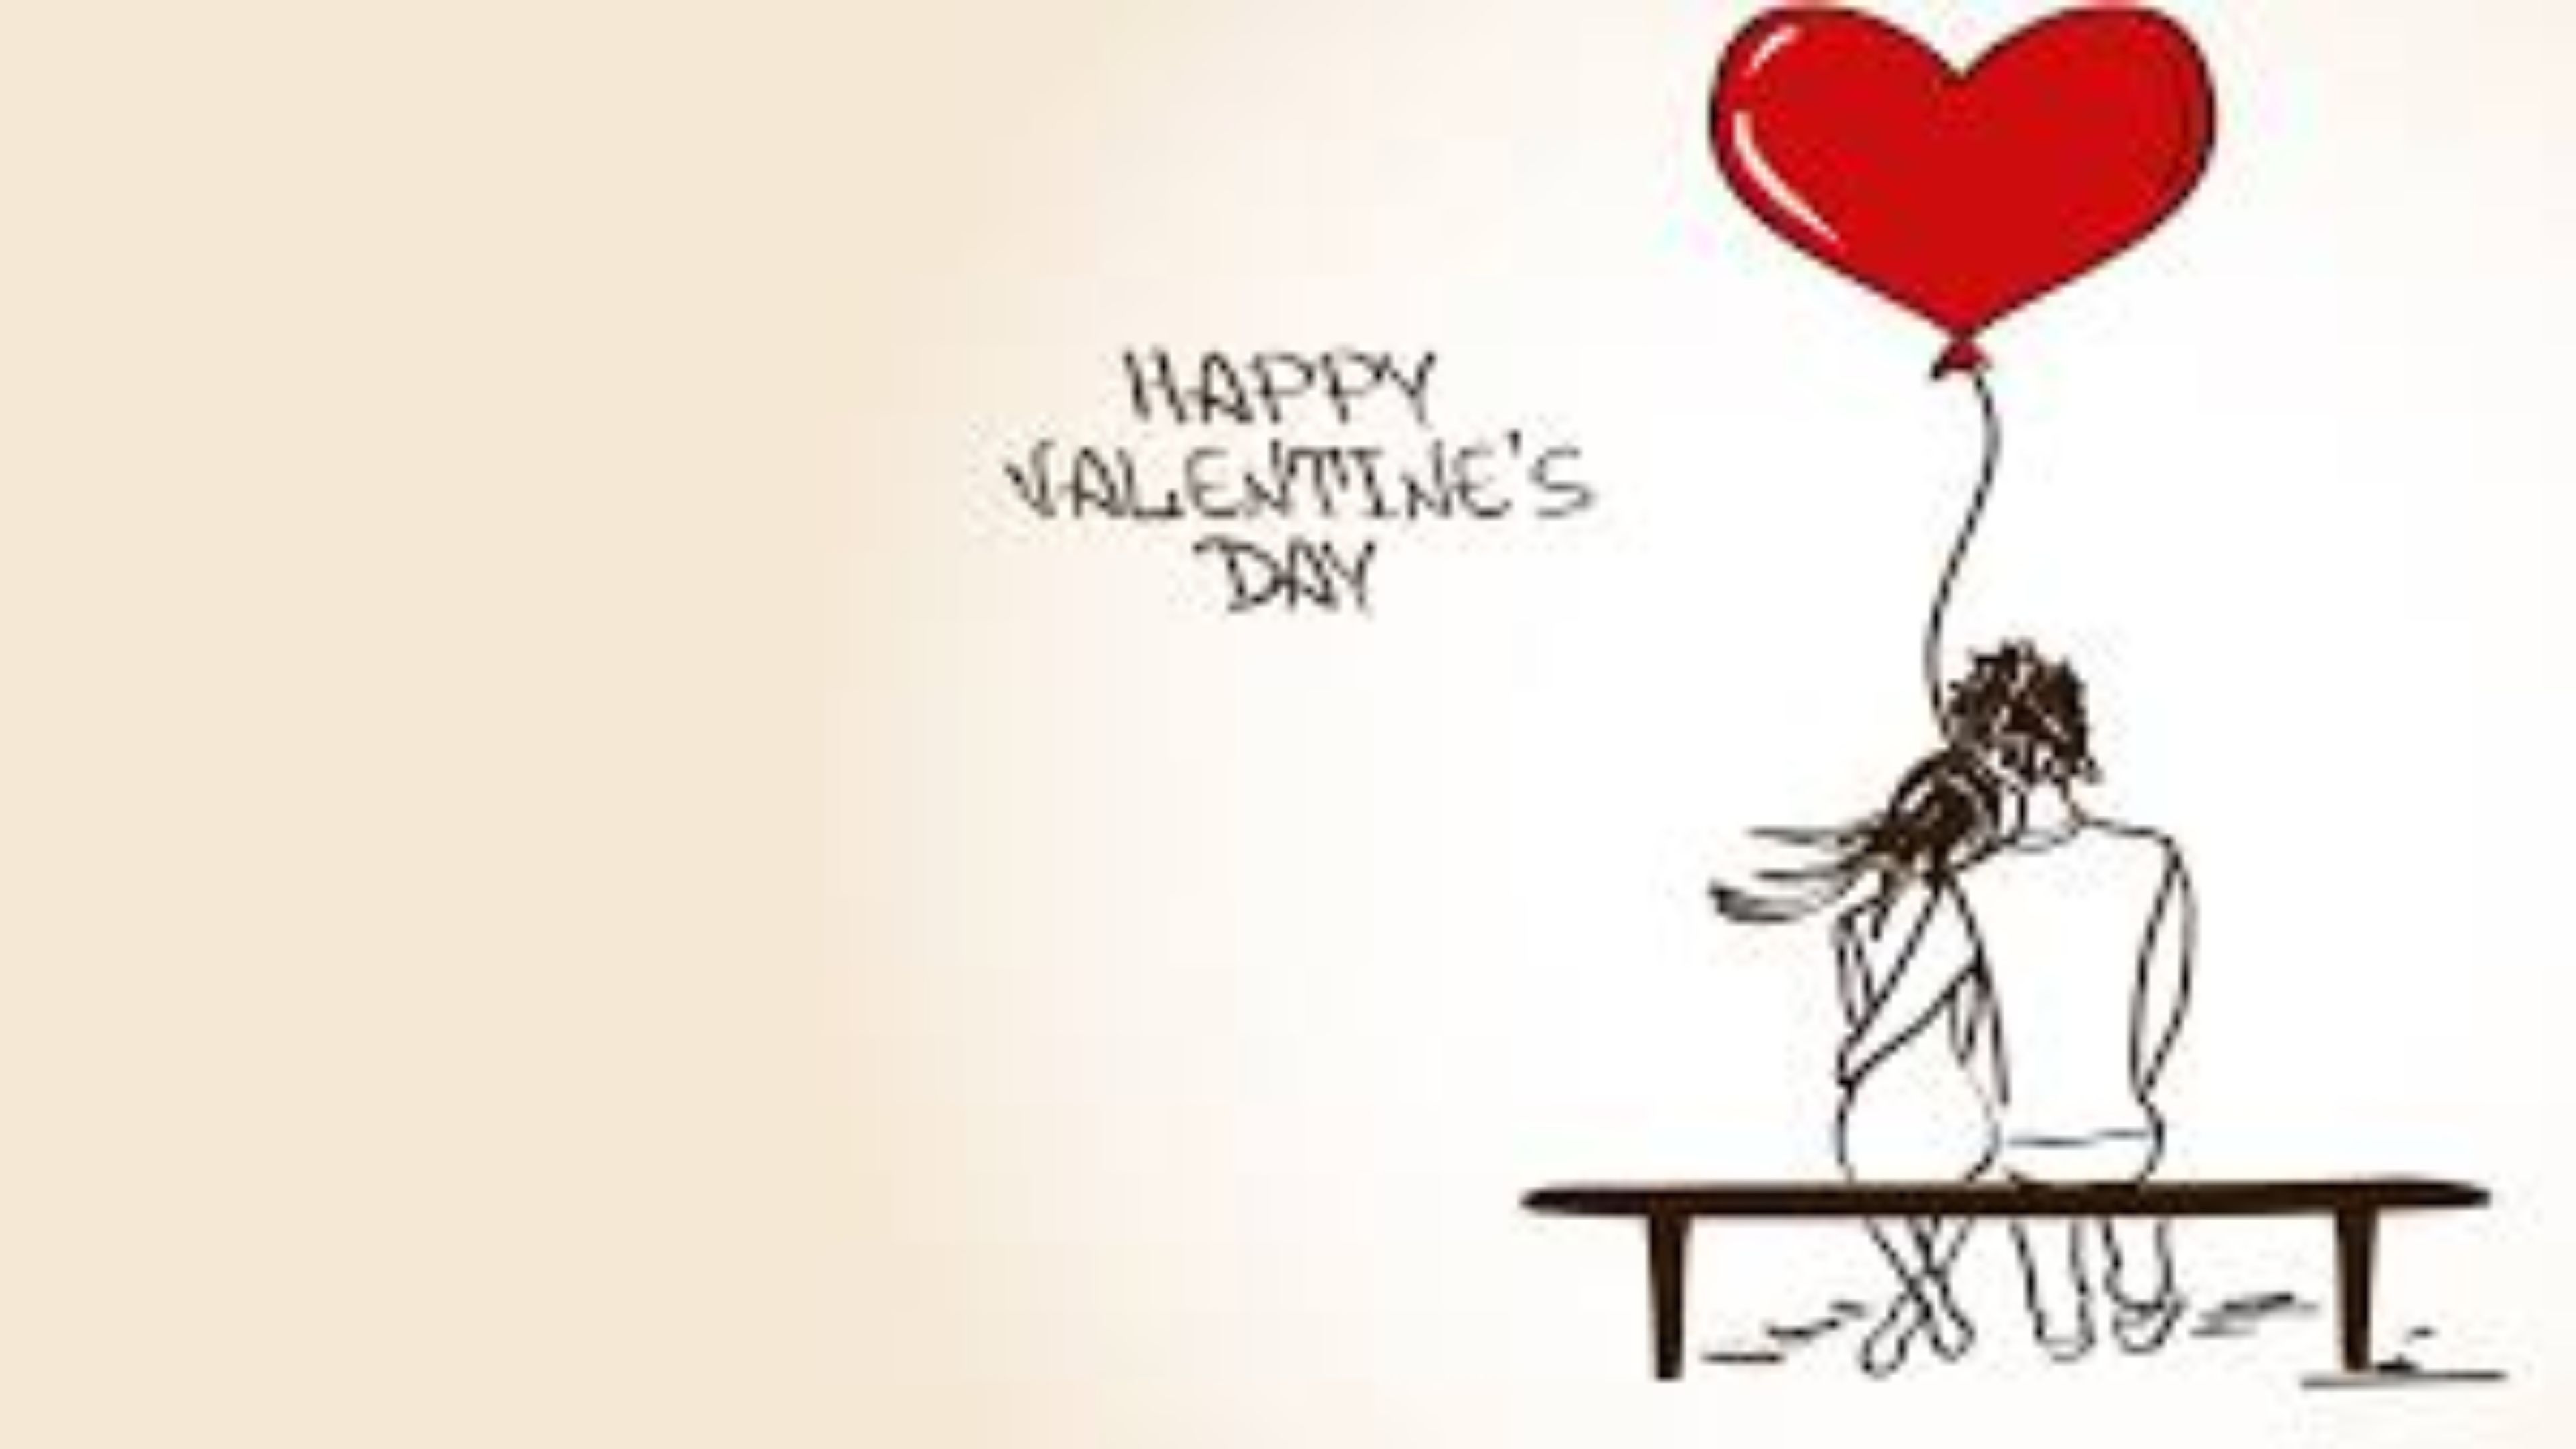 Valentines Day Image 4k .teahub.io